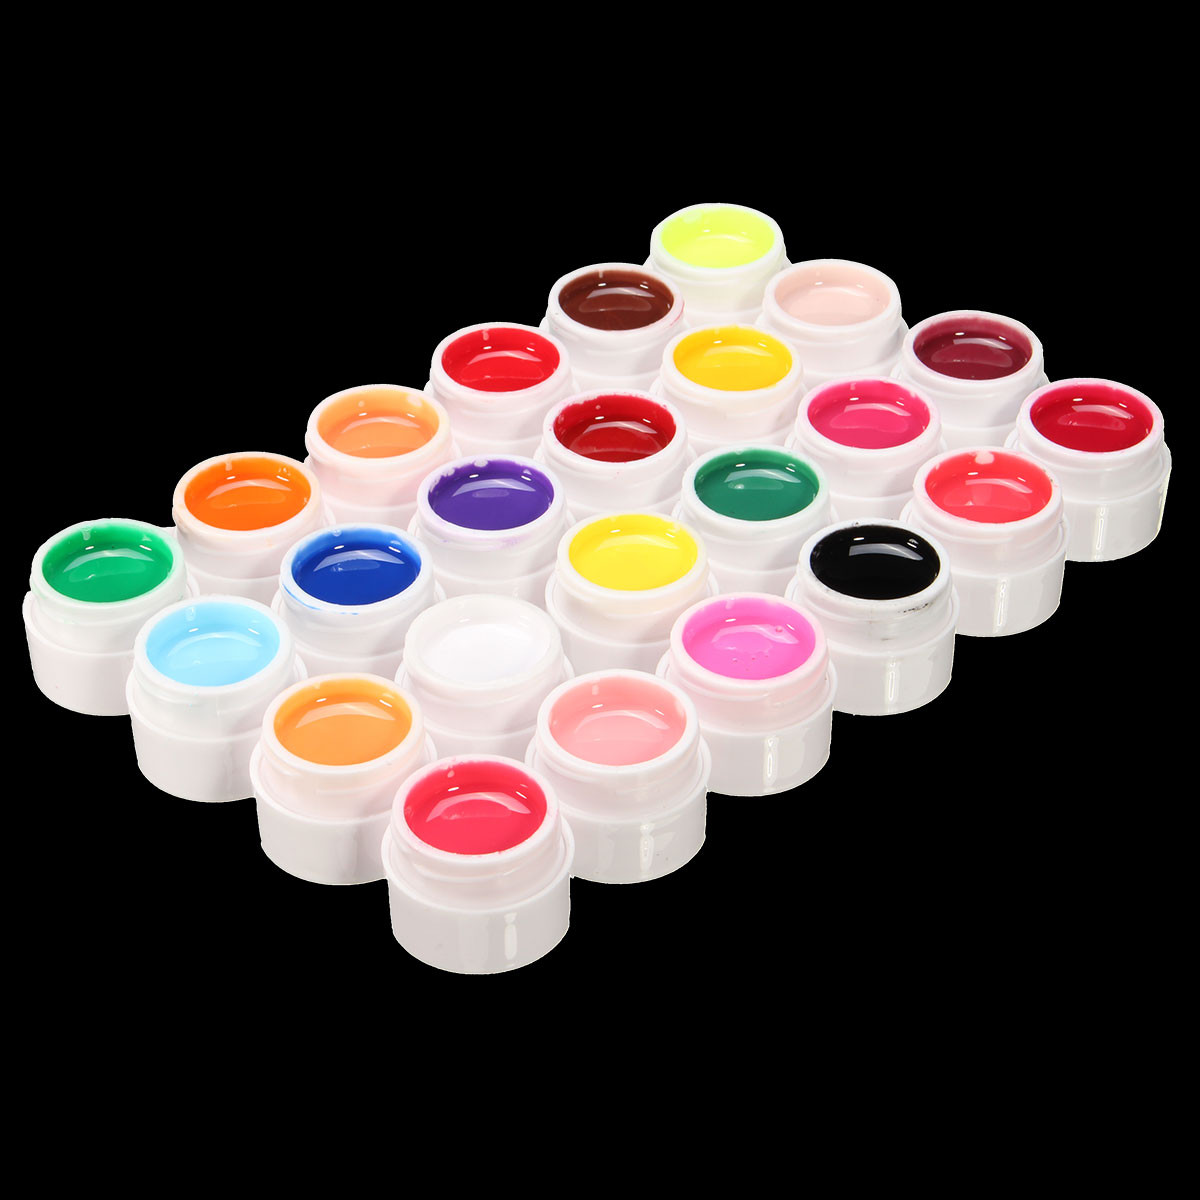 24 Colors Pure Manicure Nail Art UV Gel Builder Manicure Decoration Set 